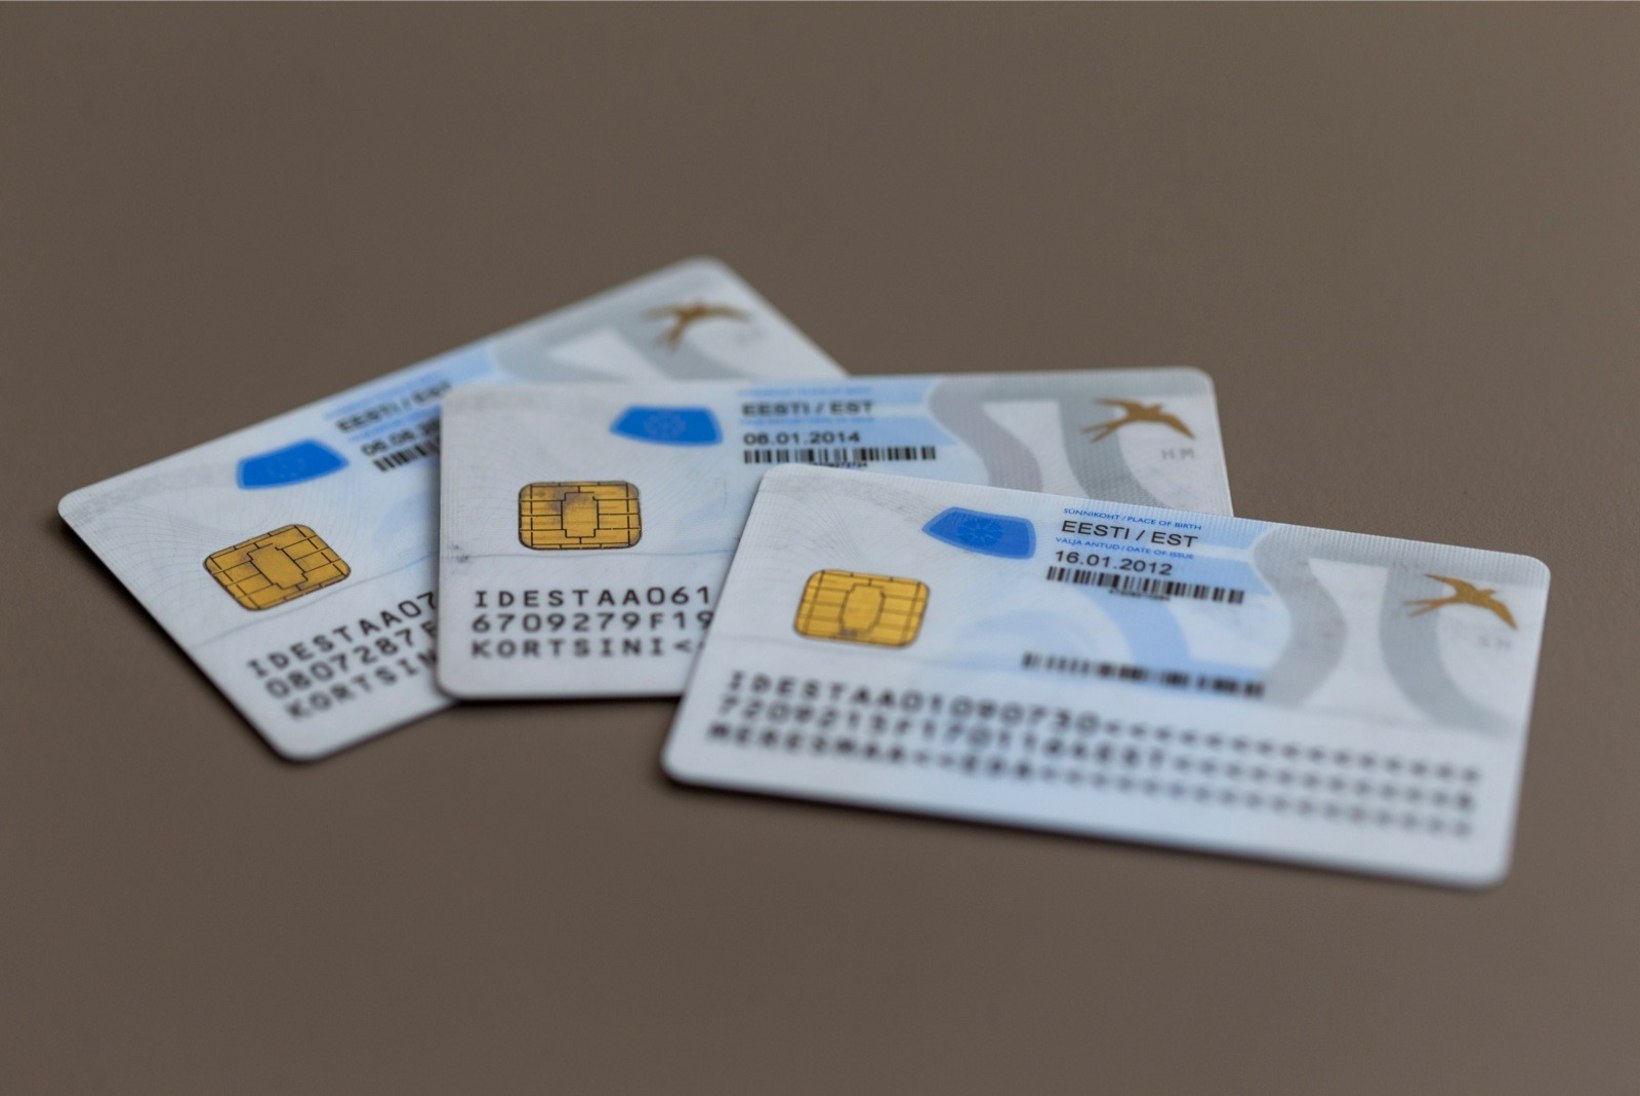 Tuhanded ID-kaardi sertifikaadid muutuvad kehtetuks